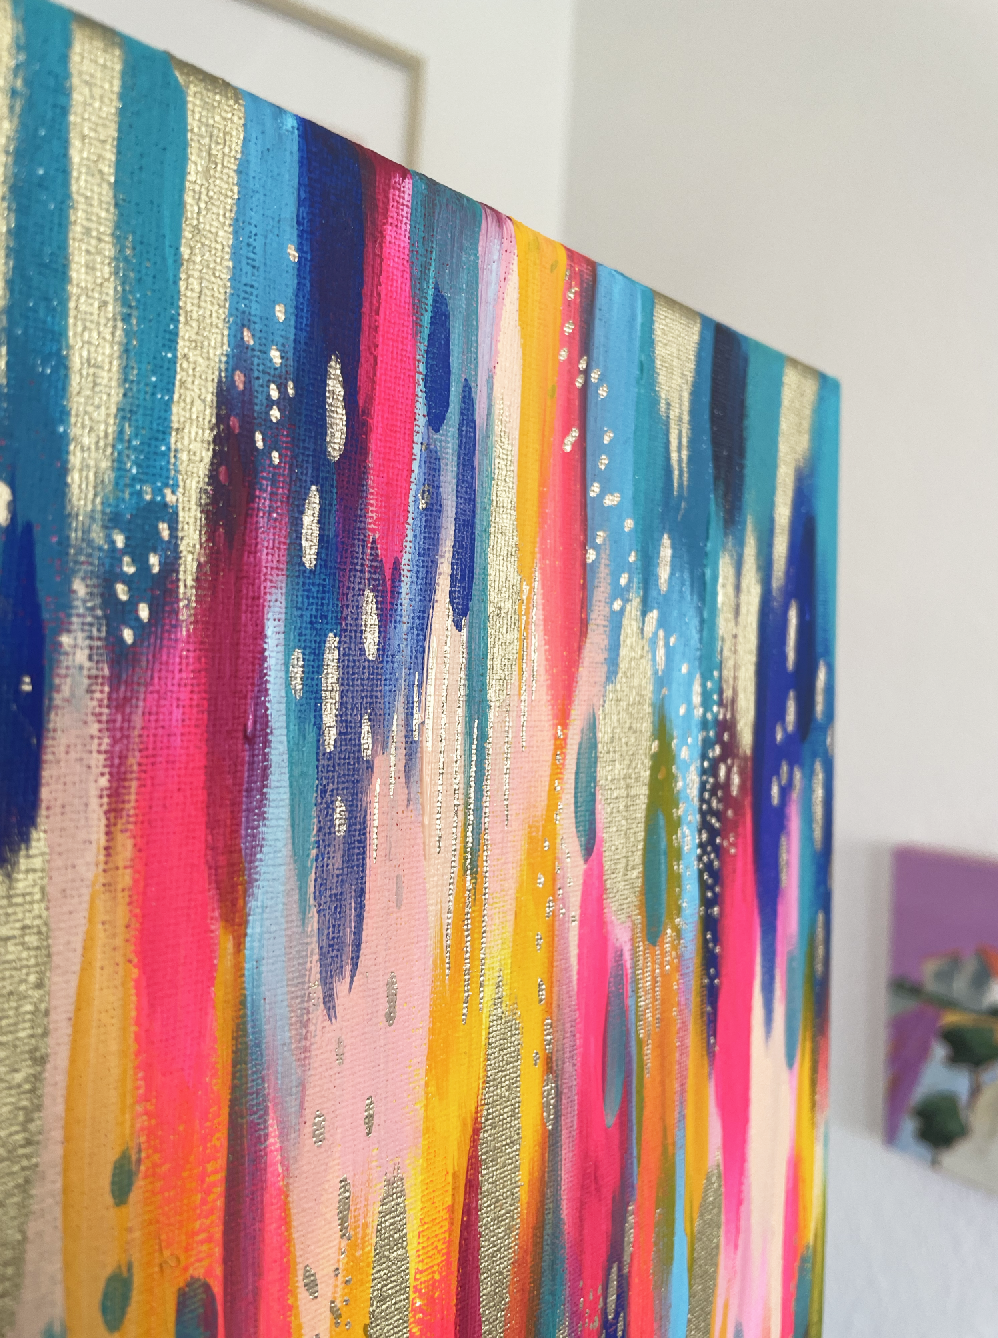 Aquemini 11x14 Canvas – made by AndVia